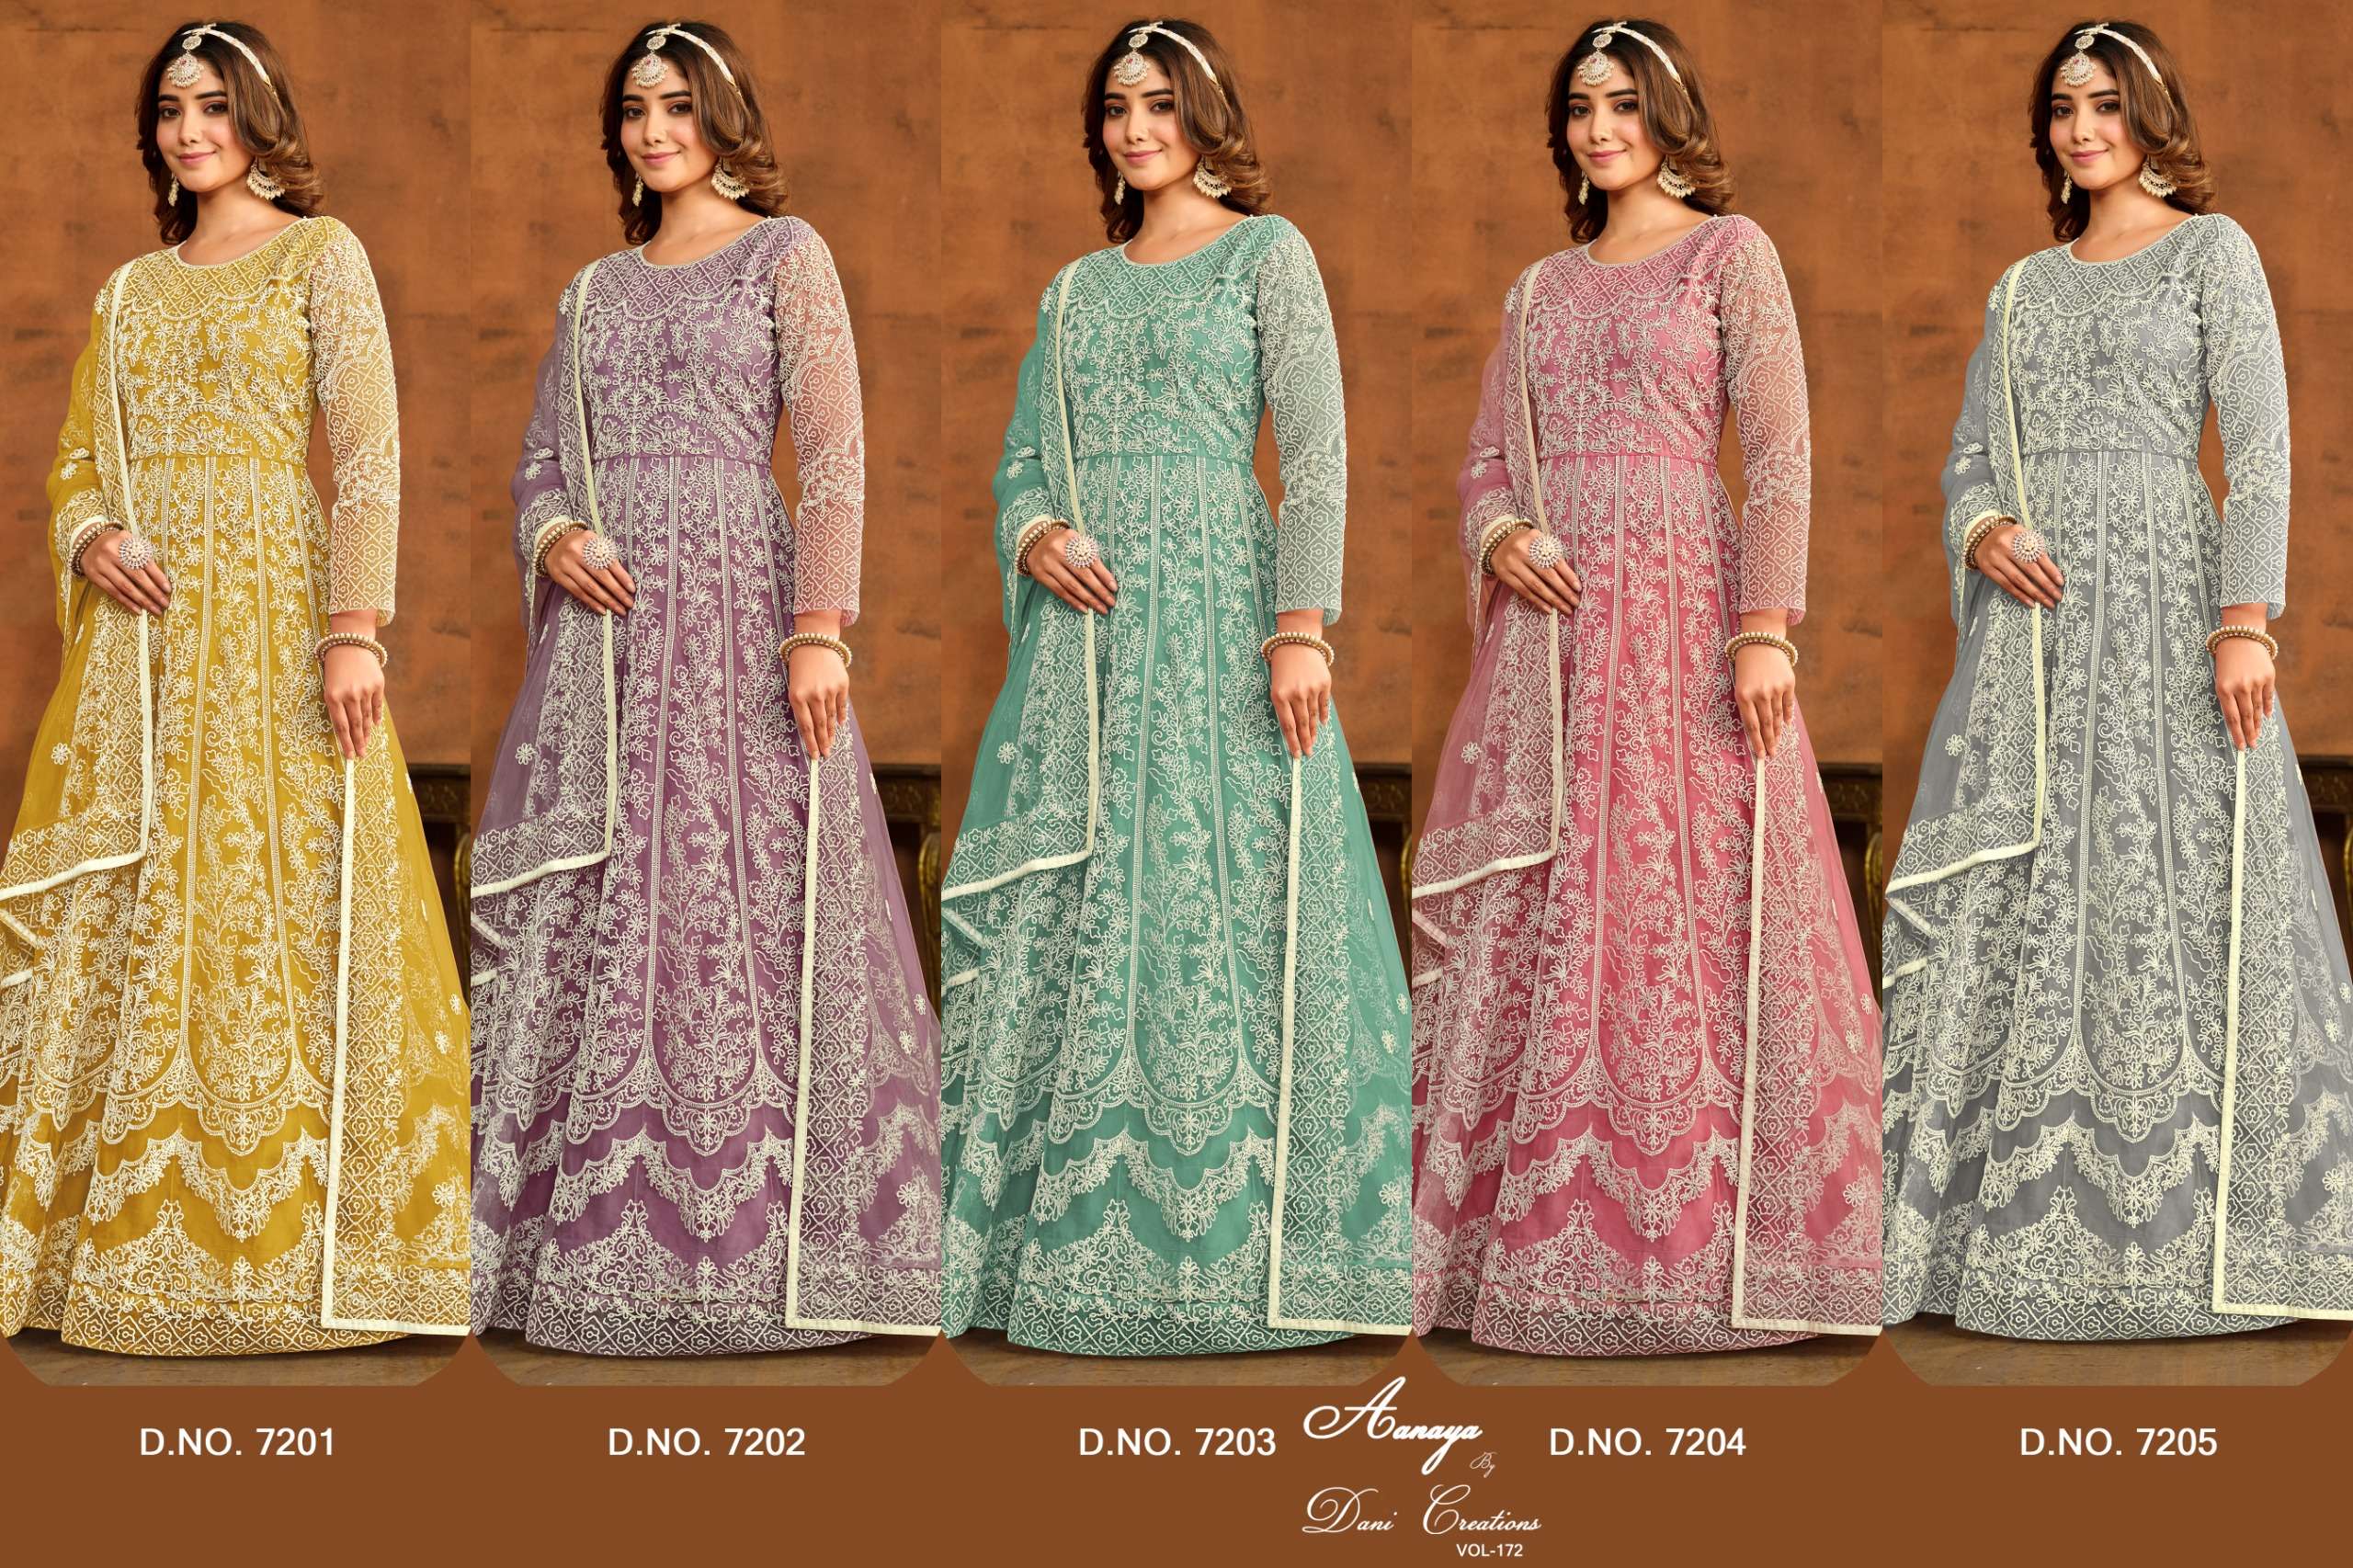 aanaya vol-172 7201-7205 series designer anarkali wedding suit wholesaler surat gujarat